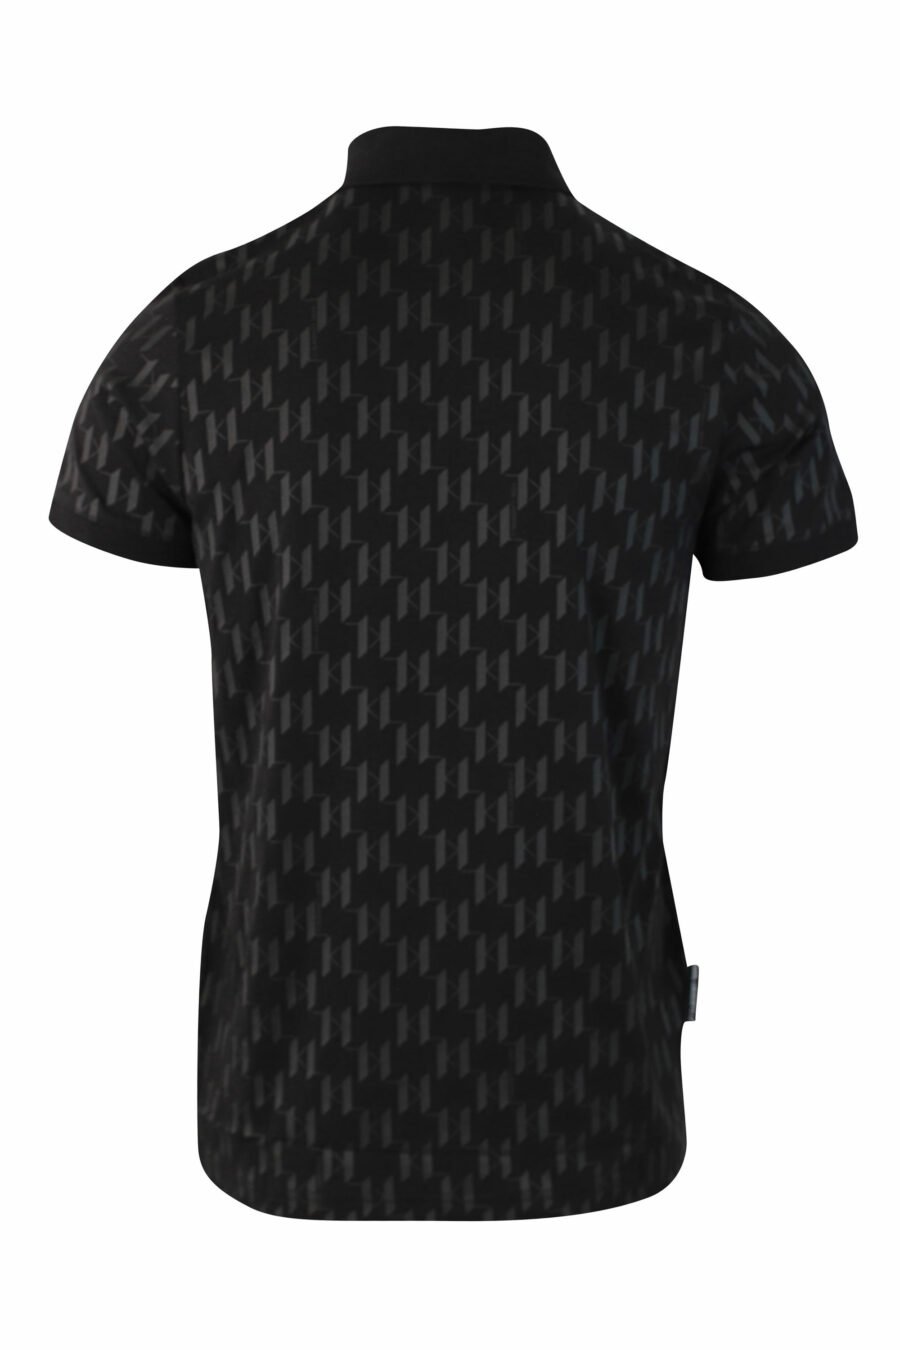 Schwarzes Poloshirt mit monochromem Monogramm - IMG 9835 1